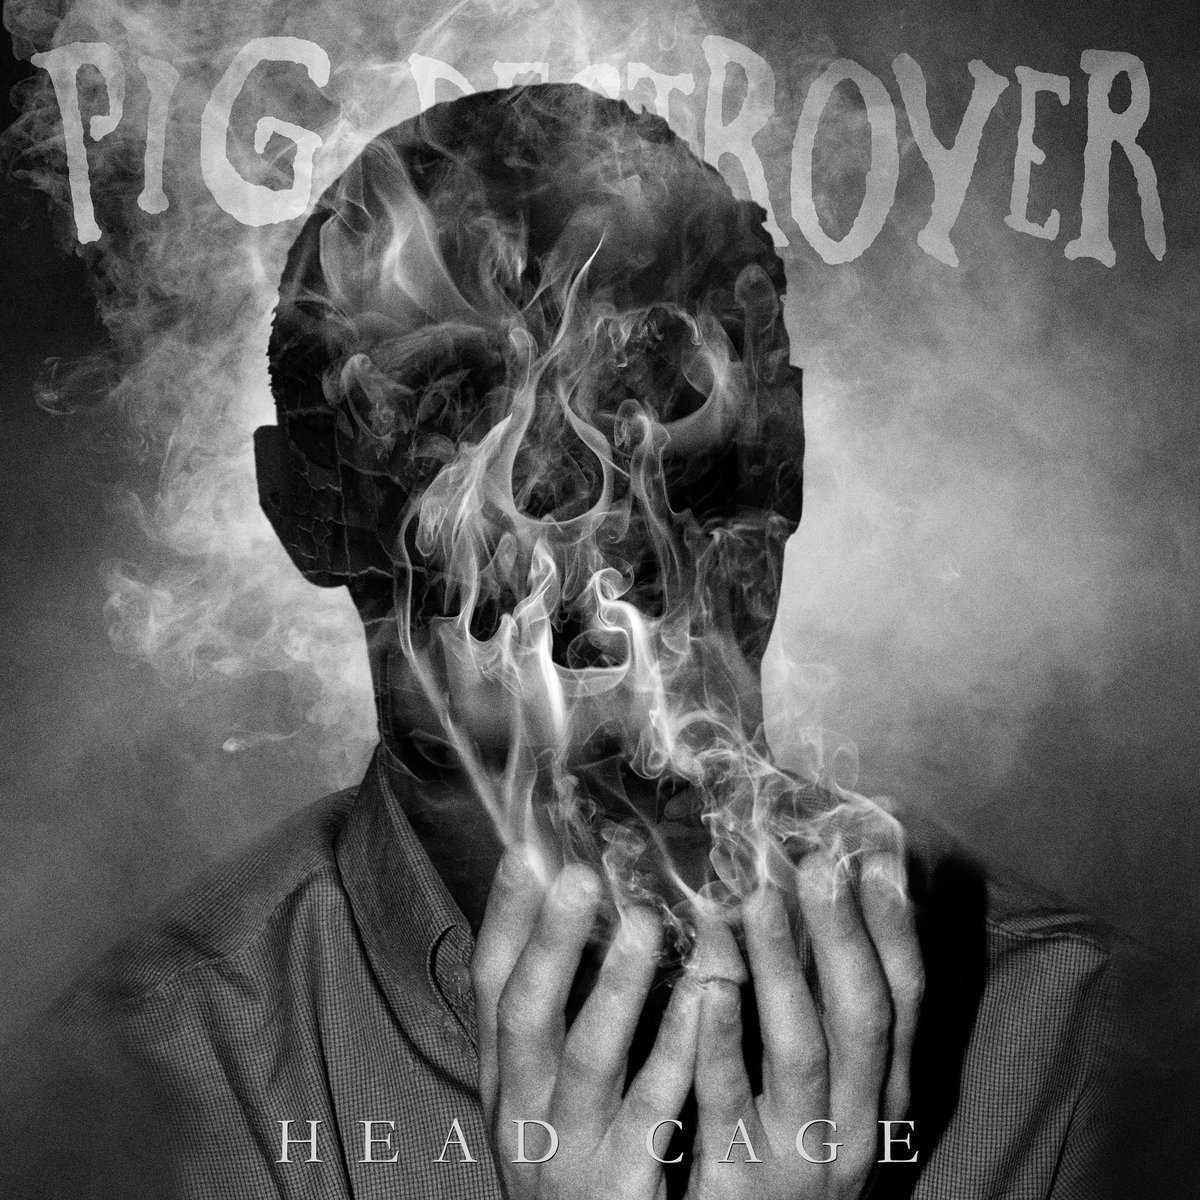 PIG DESTROYER todos los detalles de su nuevo disco, video clip “Army Of Cops” en linea